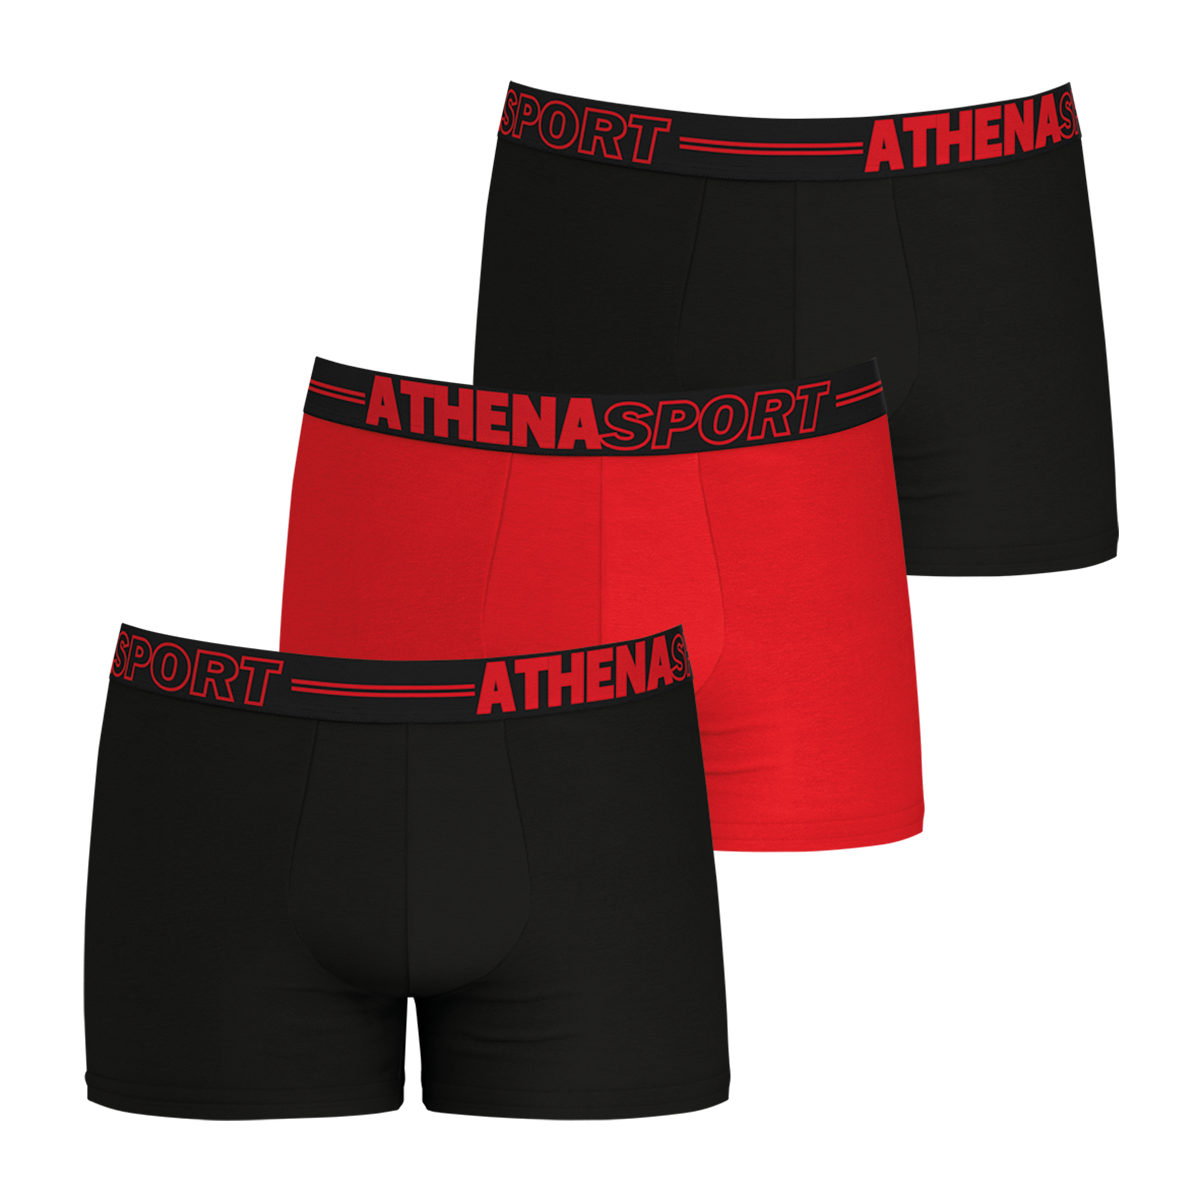 lot de 3 boxers athena multicolores avec nom de la marque brodé en rouge sur la ceinture élastiquée noire